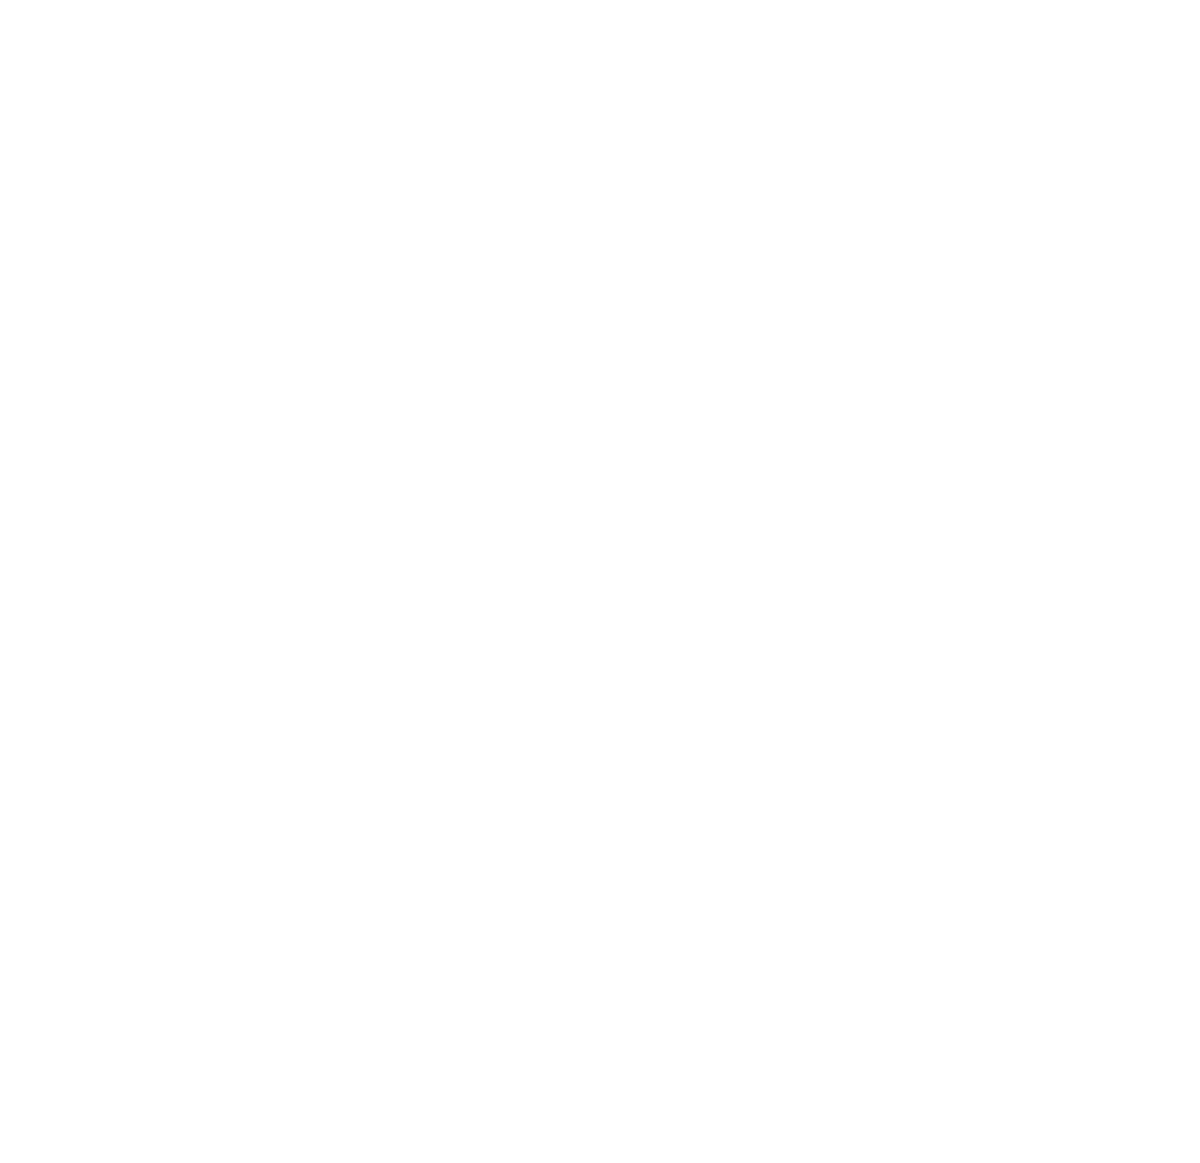 SA Health